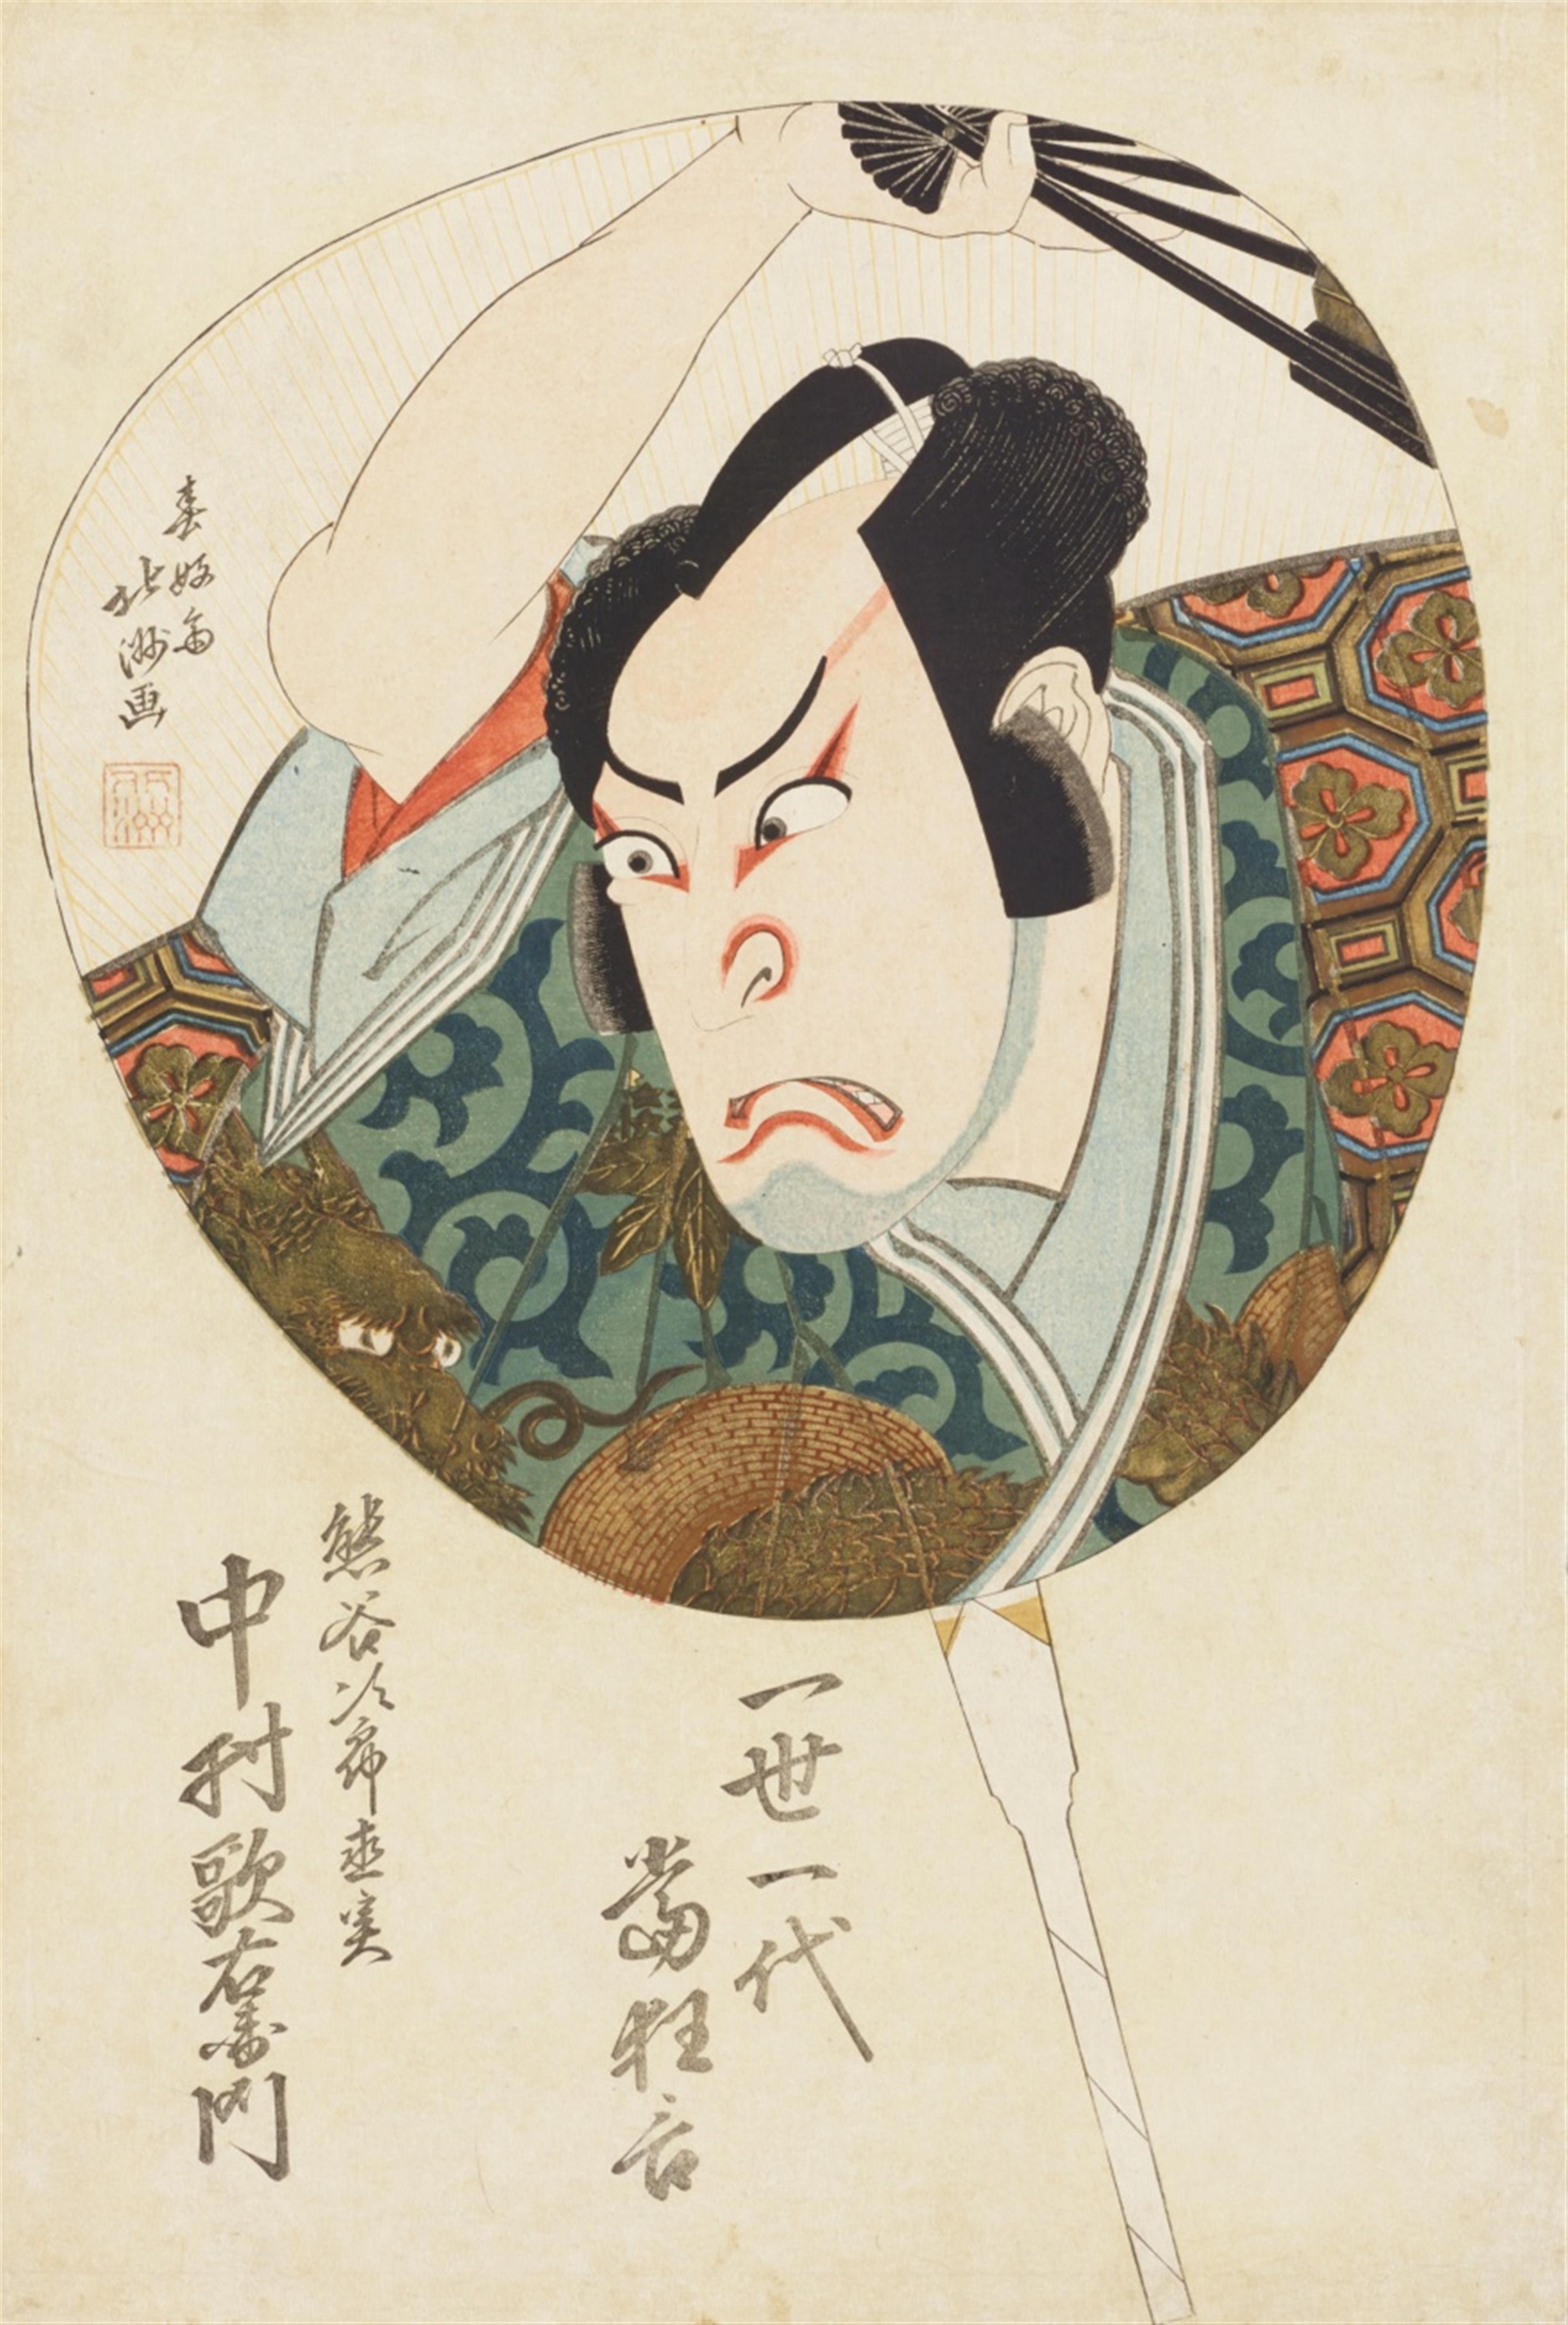 Shunkôsai Hokushû (act. 1810-1832) and Shunbaisai Hokuei (?-1837) - image-1